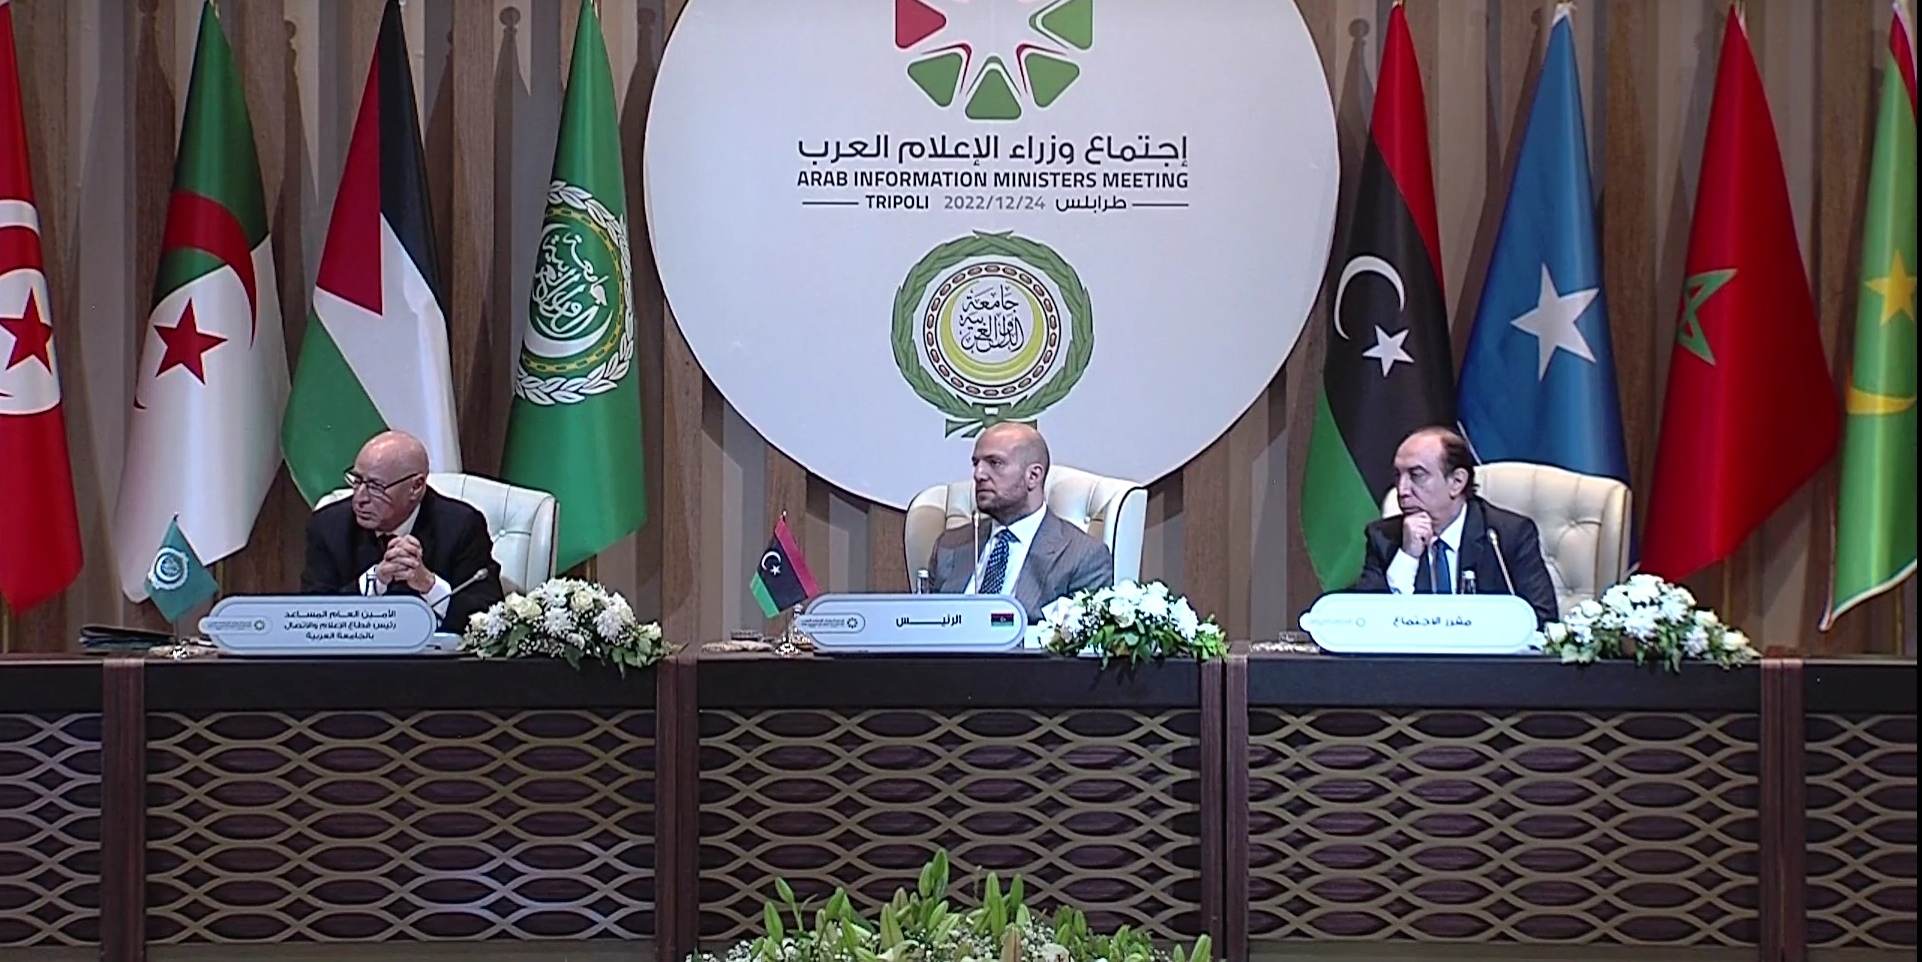 Libye: Le Gouvernement soutient les initiatives visant à améliorer l’image des Arabes